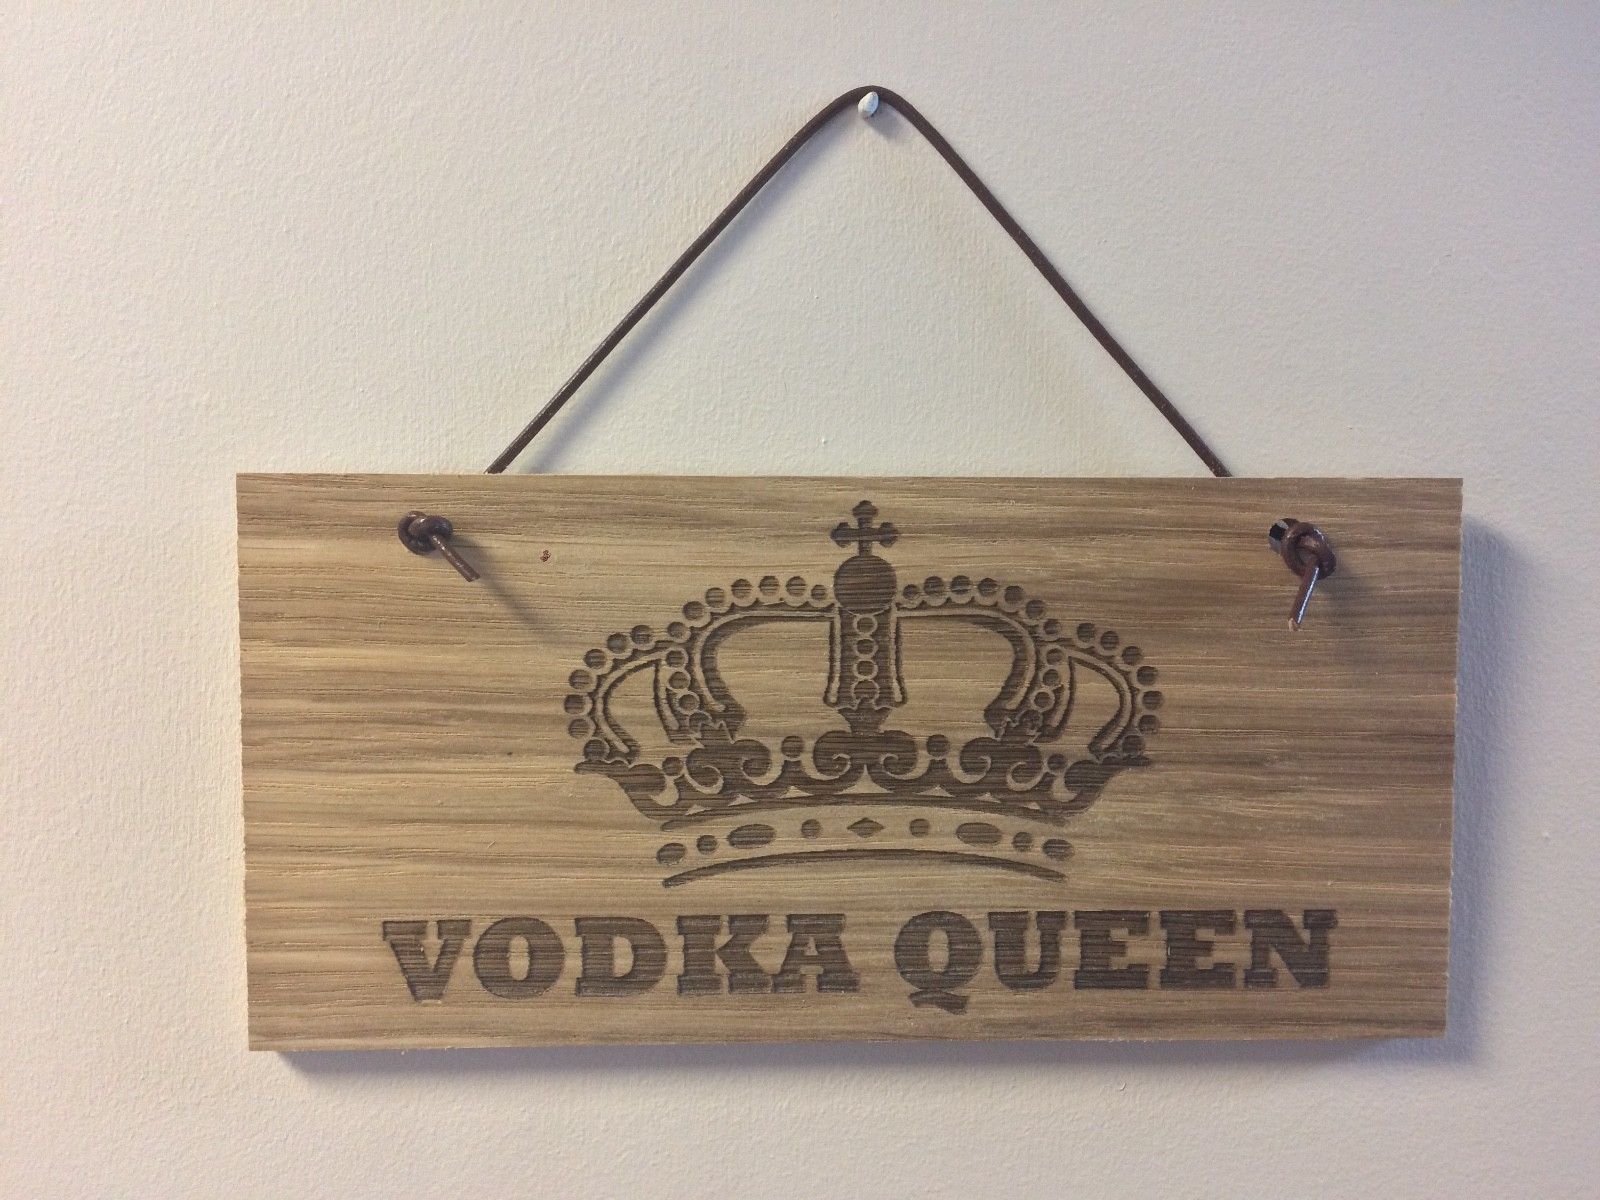 #8 Vodka Queen